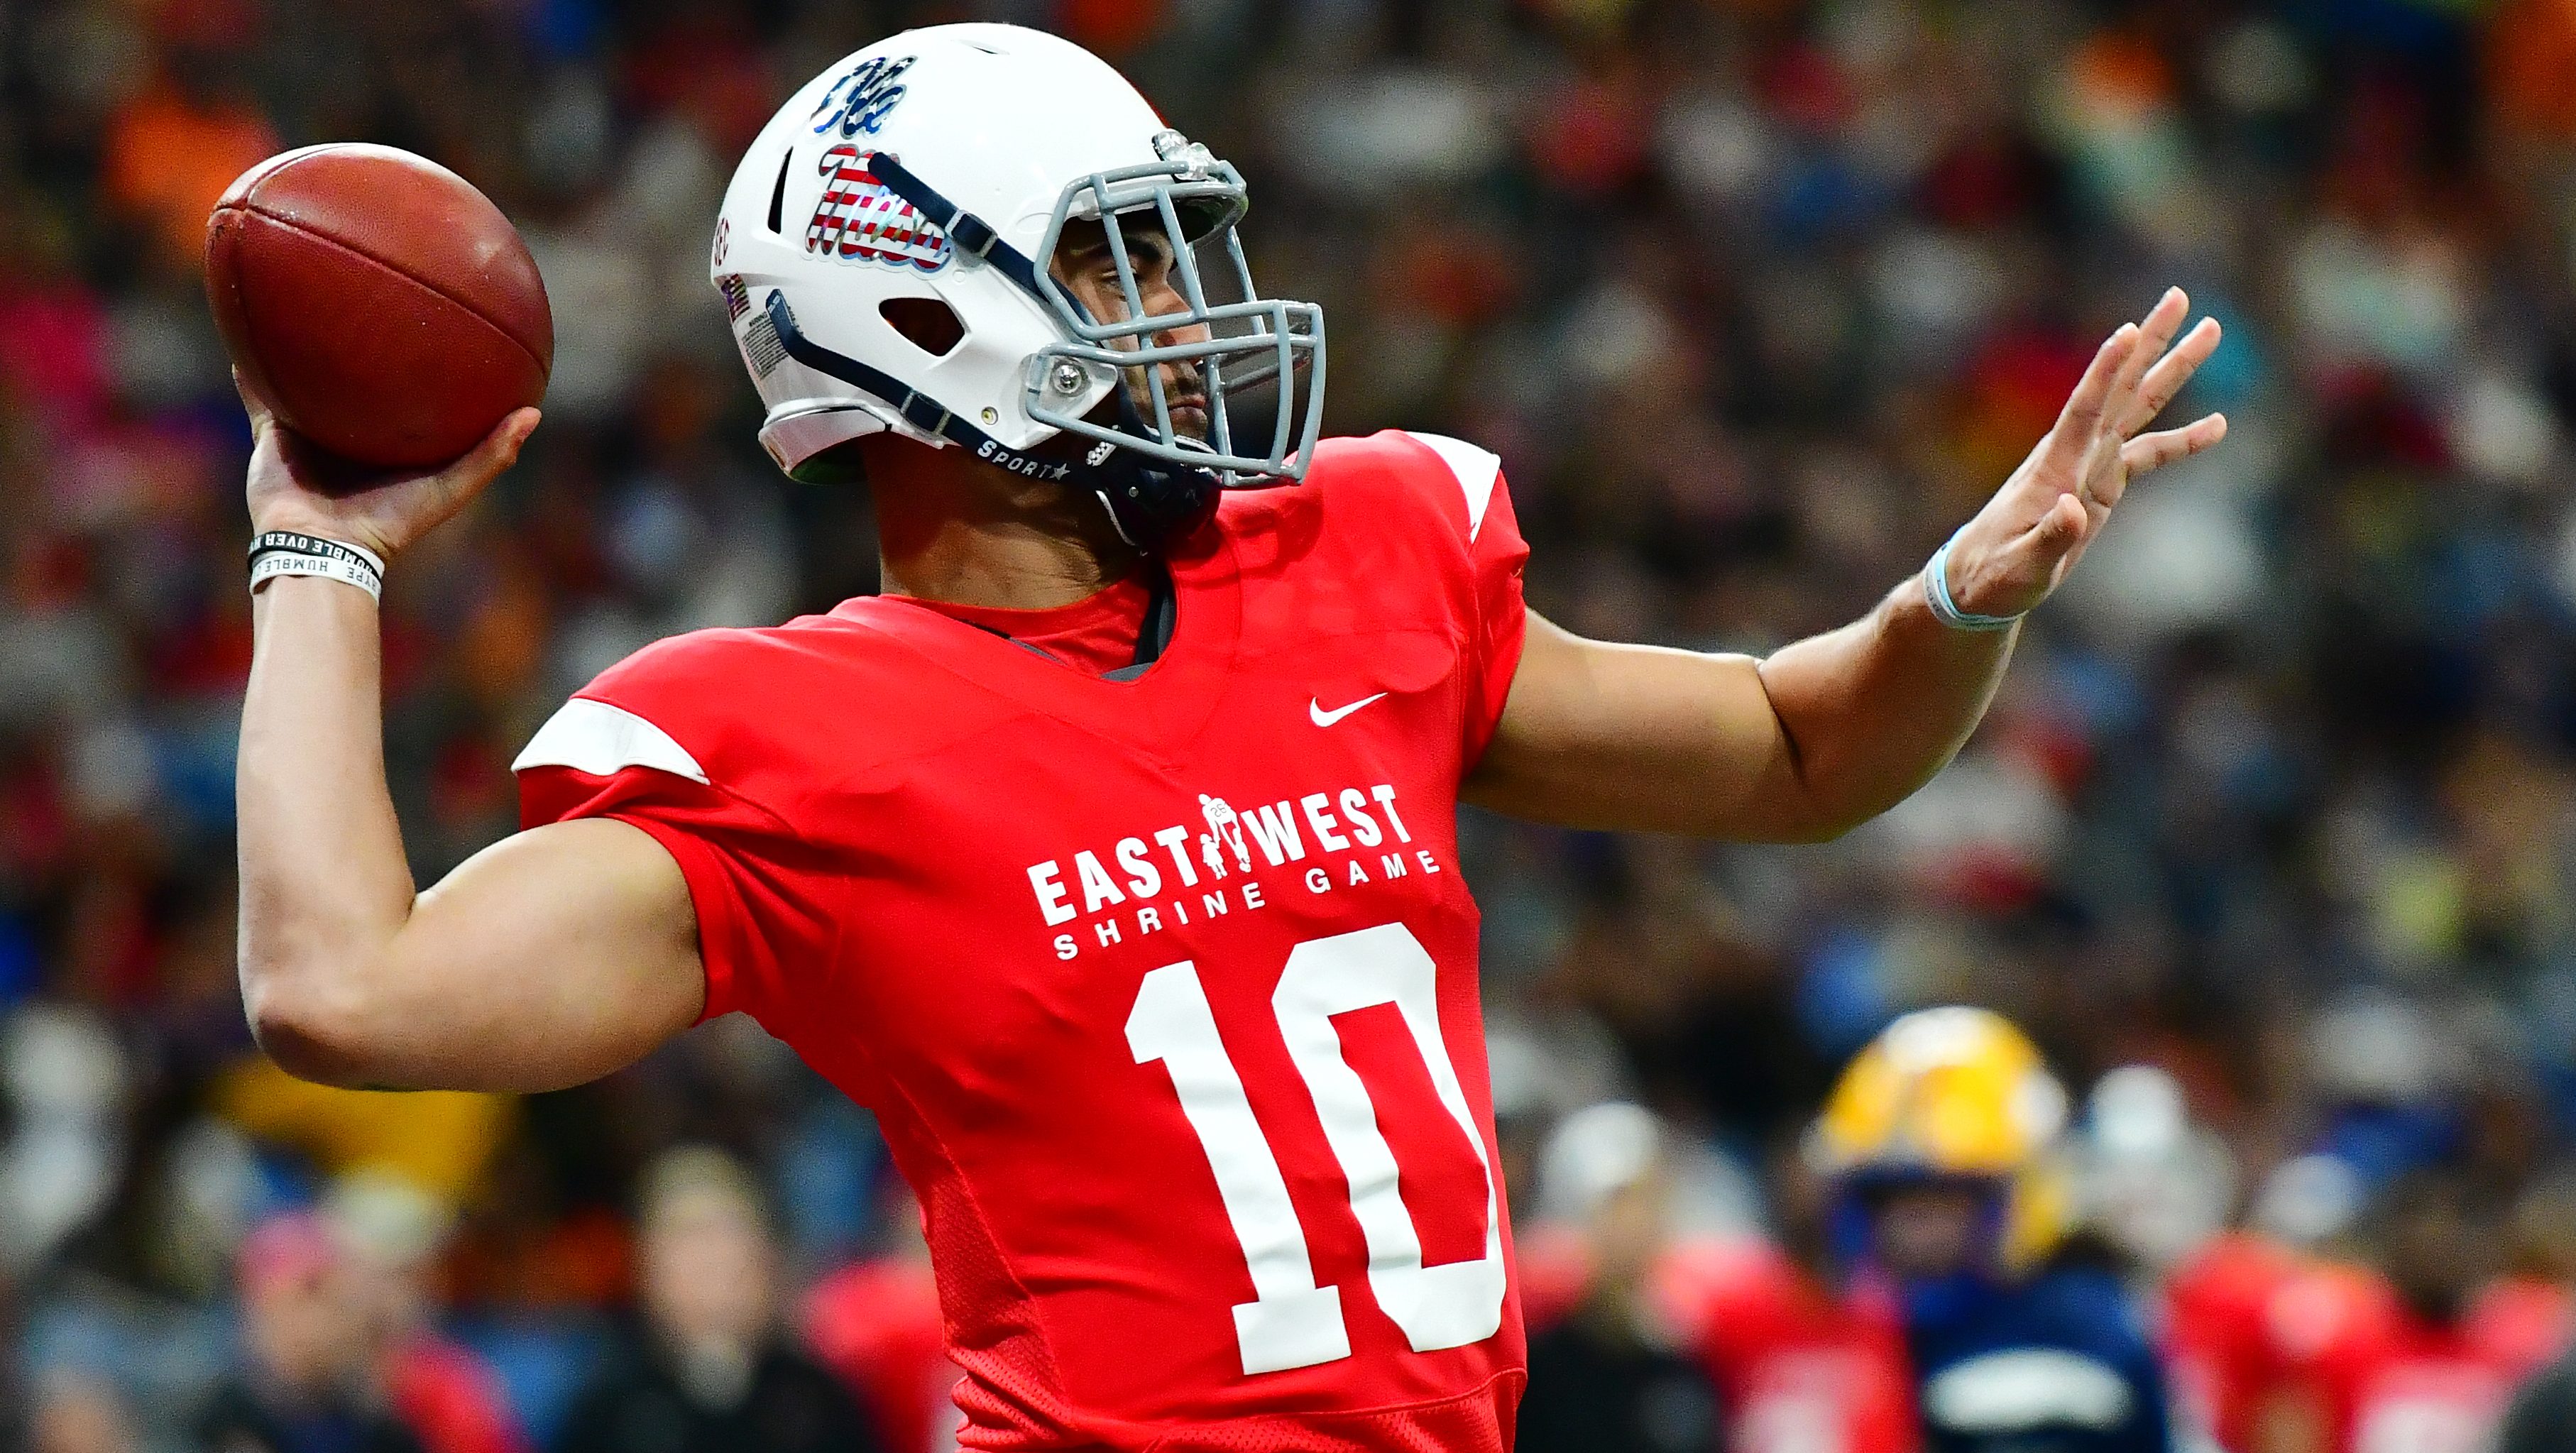 Ole Miss Football: Where Will Jordan Ta'amu Land In The 2019 NFL Draft?